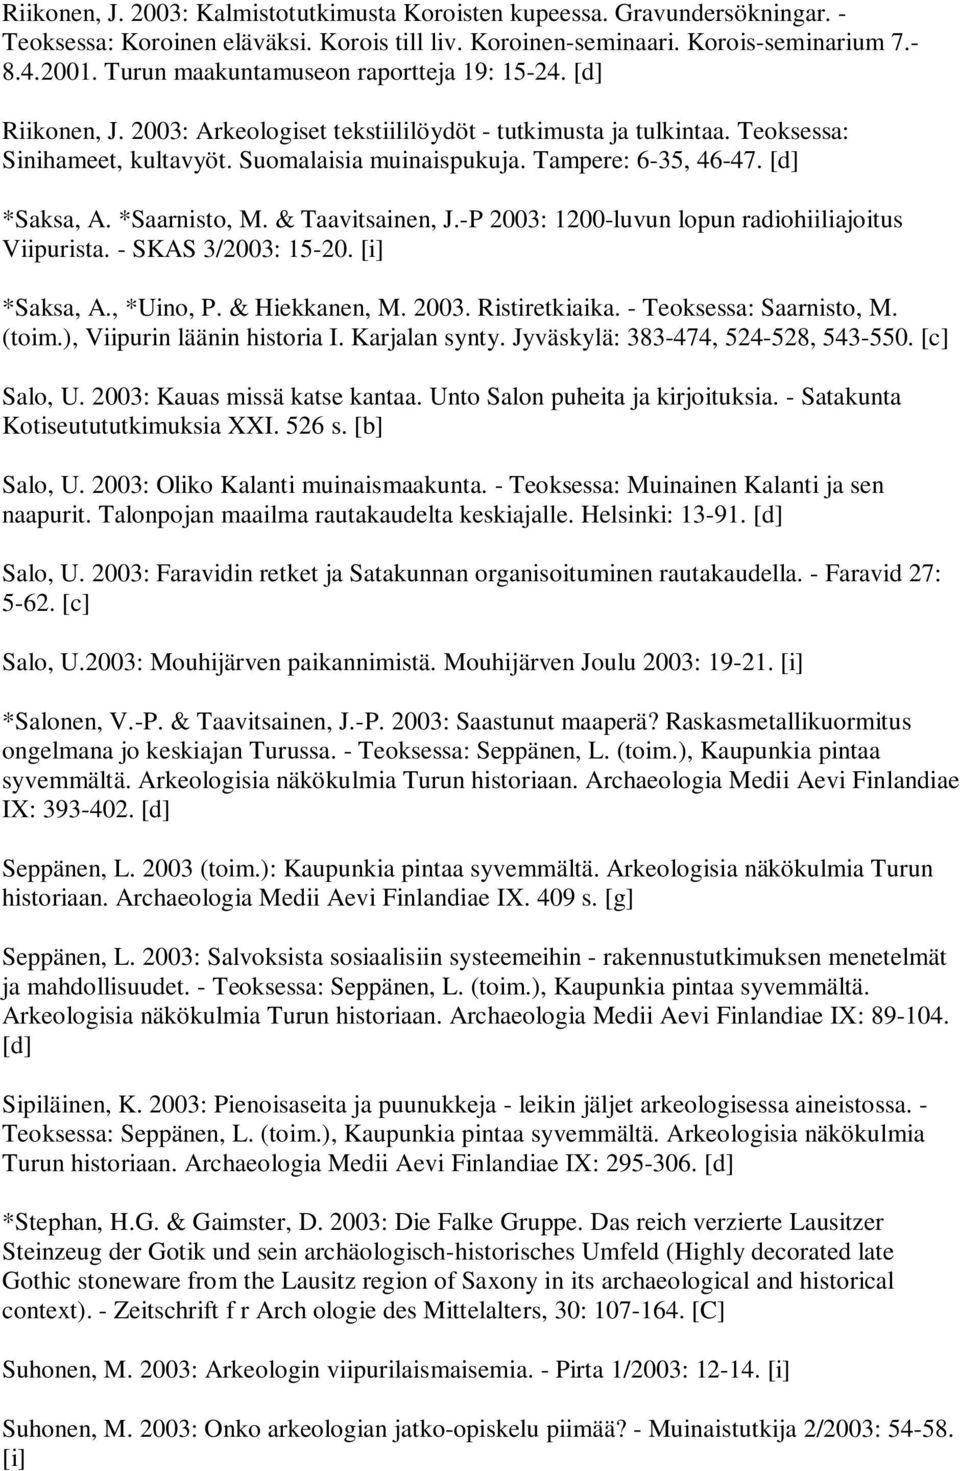 Tampere: 6-35, 46-47. [d] *Saksa, A. *Saarnisto, M. & Taavitsainen, J.-P 2003: 1200-luvun lopun radiohiiliajoitus Viipurista. - SKAS 3/2003: 15-20. [i] *Saksa, A., *Uino, P. & Hiekkanen, M. 2003. Ristiretkiaika.